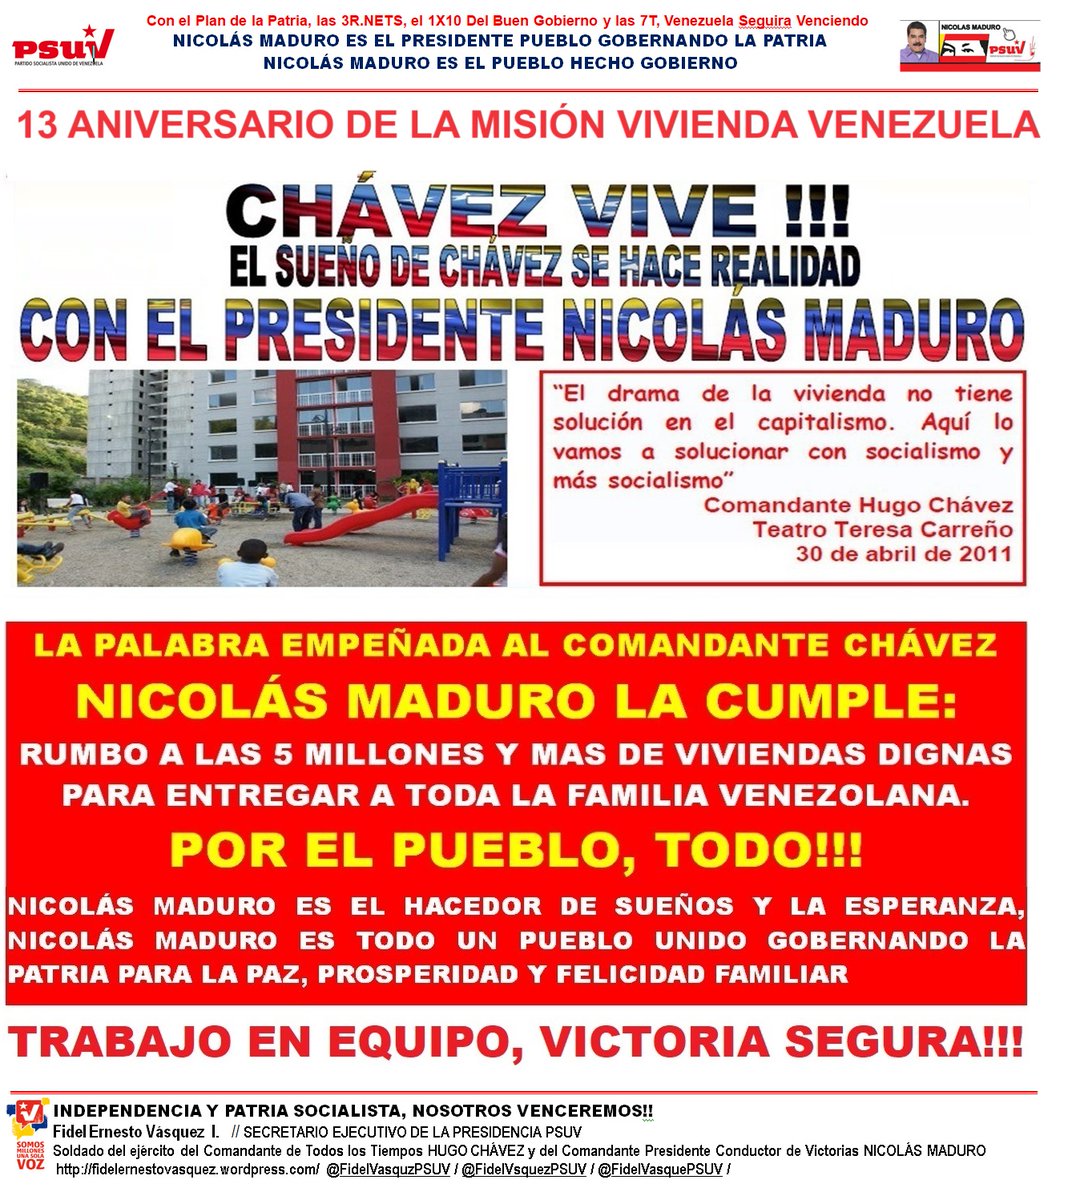 13 Aniv. Gran Misión Vivienda Venezuela… CHÁVEZ VIVE!!! El sueño del Comandante Chávez lo hace realidad el Pte @NicolasMaduro . La palabra empeñada, el Pte @NicolasMaduro La Cumple… VAMOS RUMBO A 5 MILLONES Y MÁS DE VIVIENDAS PARA TODA LA FAMILIA. wp.me/plhwe-9j4